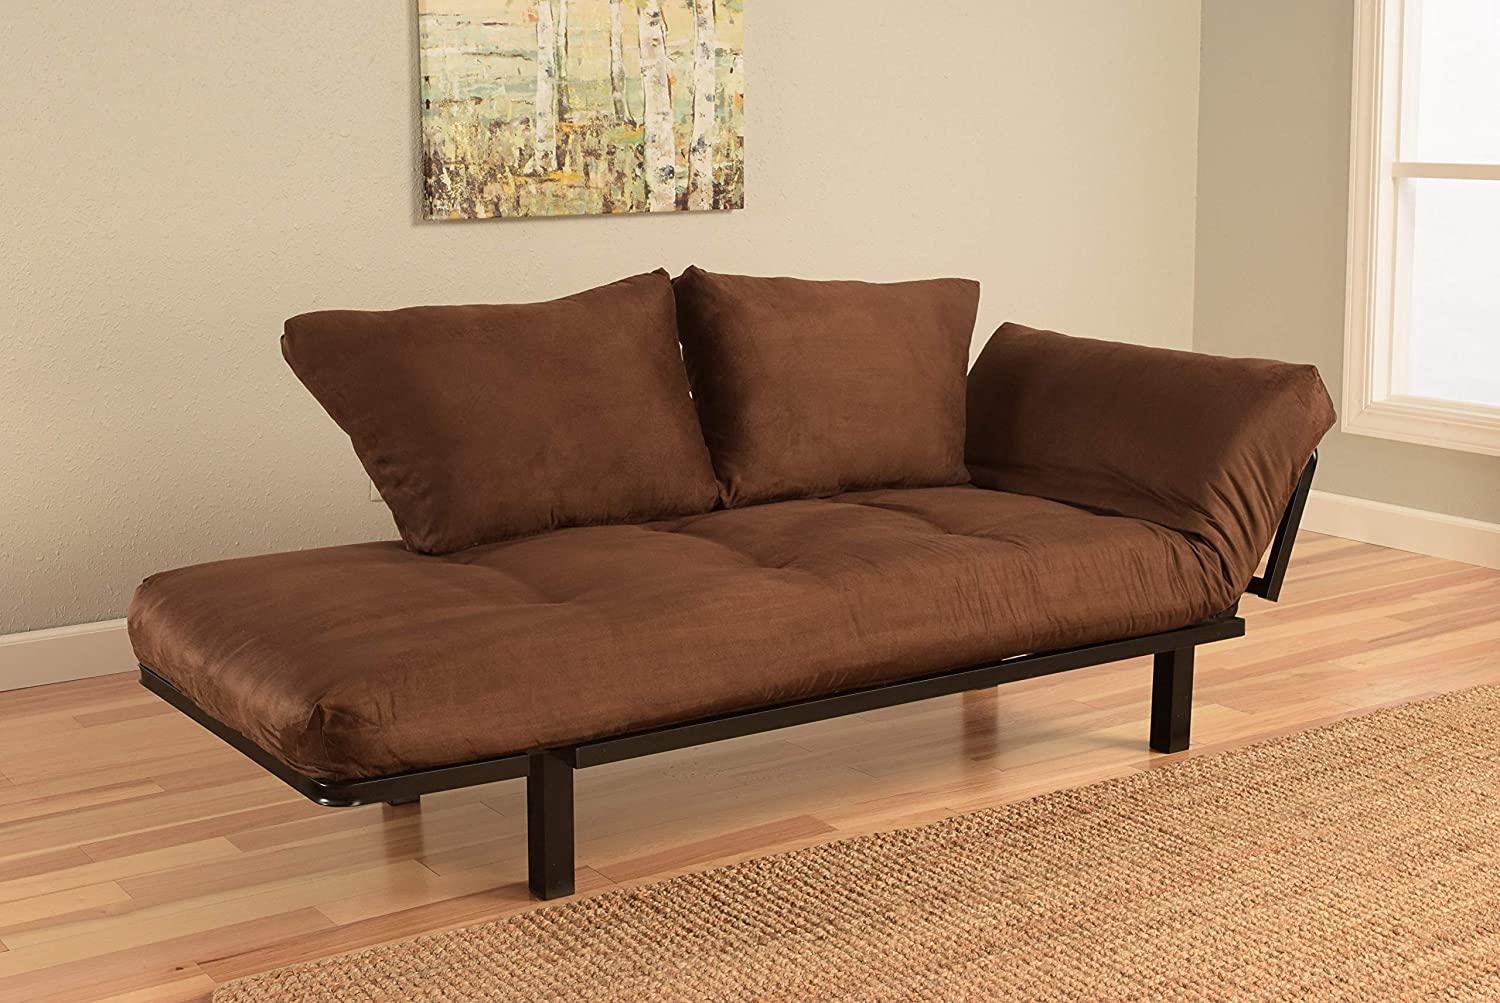 Sofa Cum Beds: Furniture for College Dorm, Bedroom Studio Apartment Patio Porch